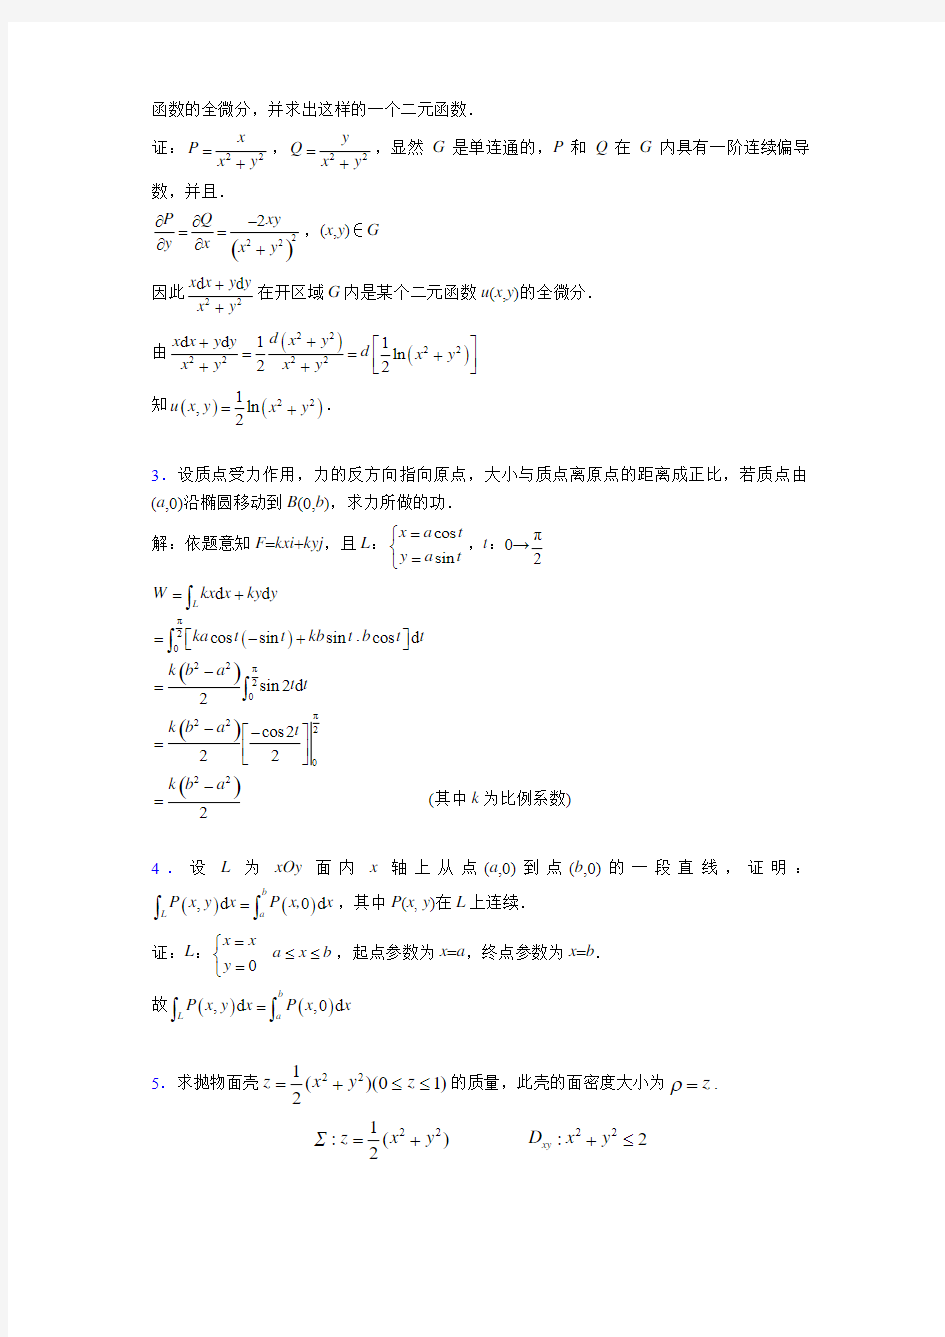 2019最新高等数学(下册)期末考试试题(含答案)OF